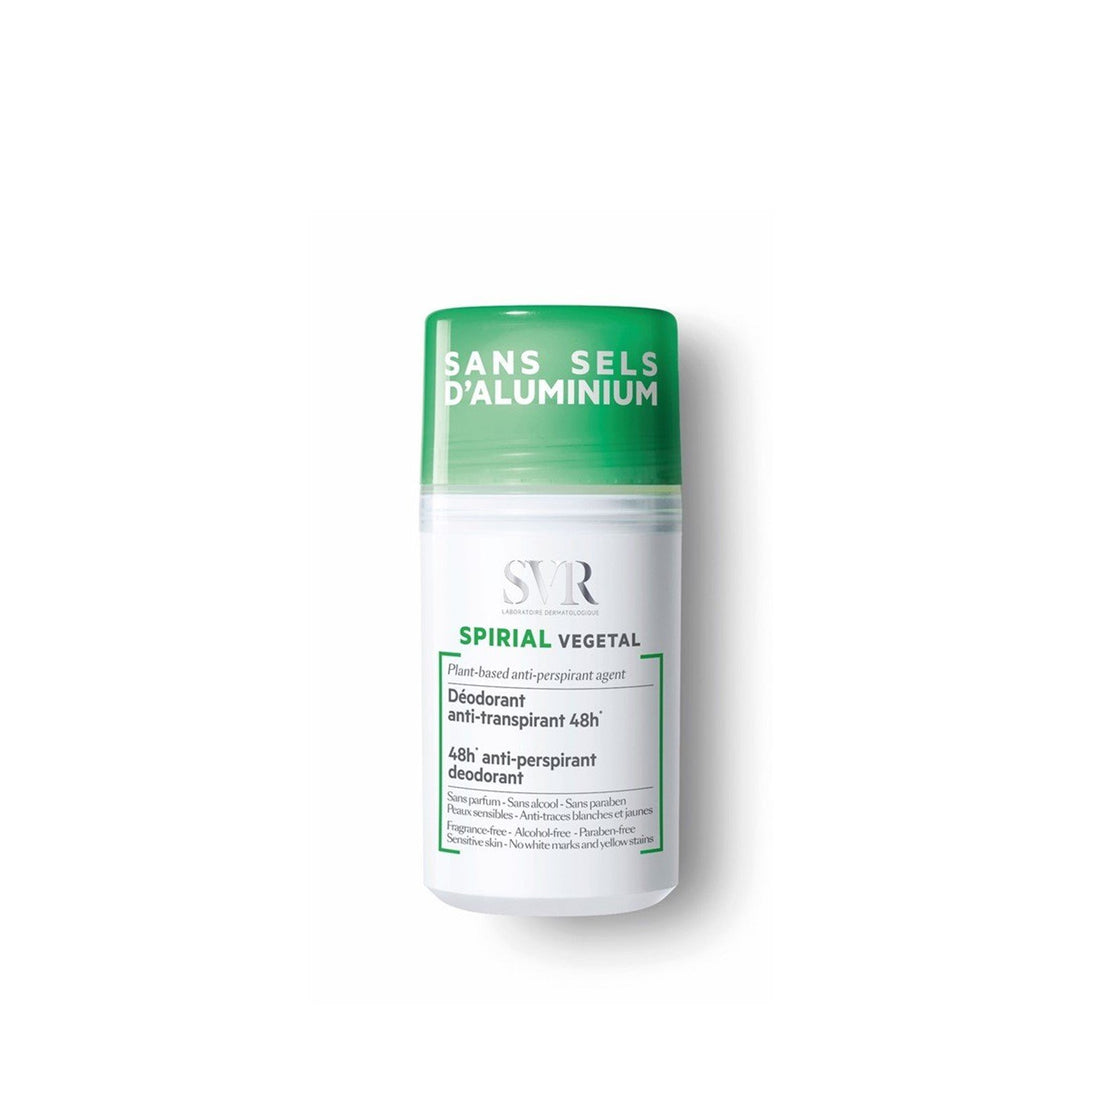 SVR Vegetal Spirial 48h Anti-Perspirant Deodorant 50ml